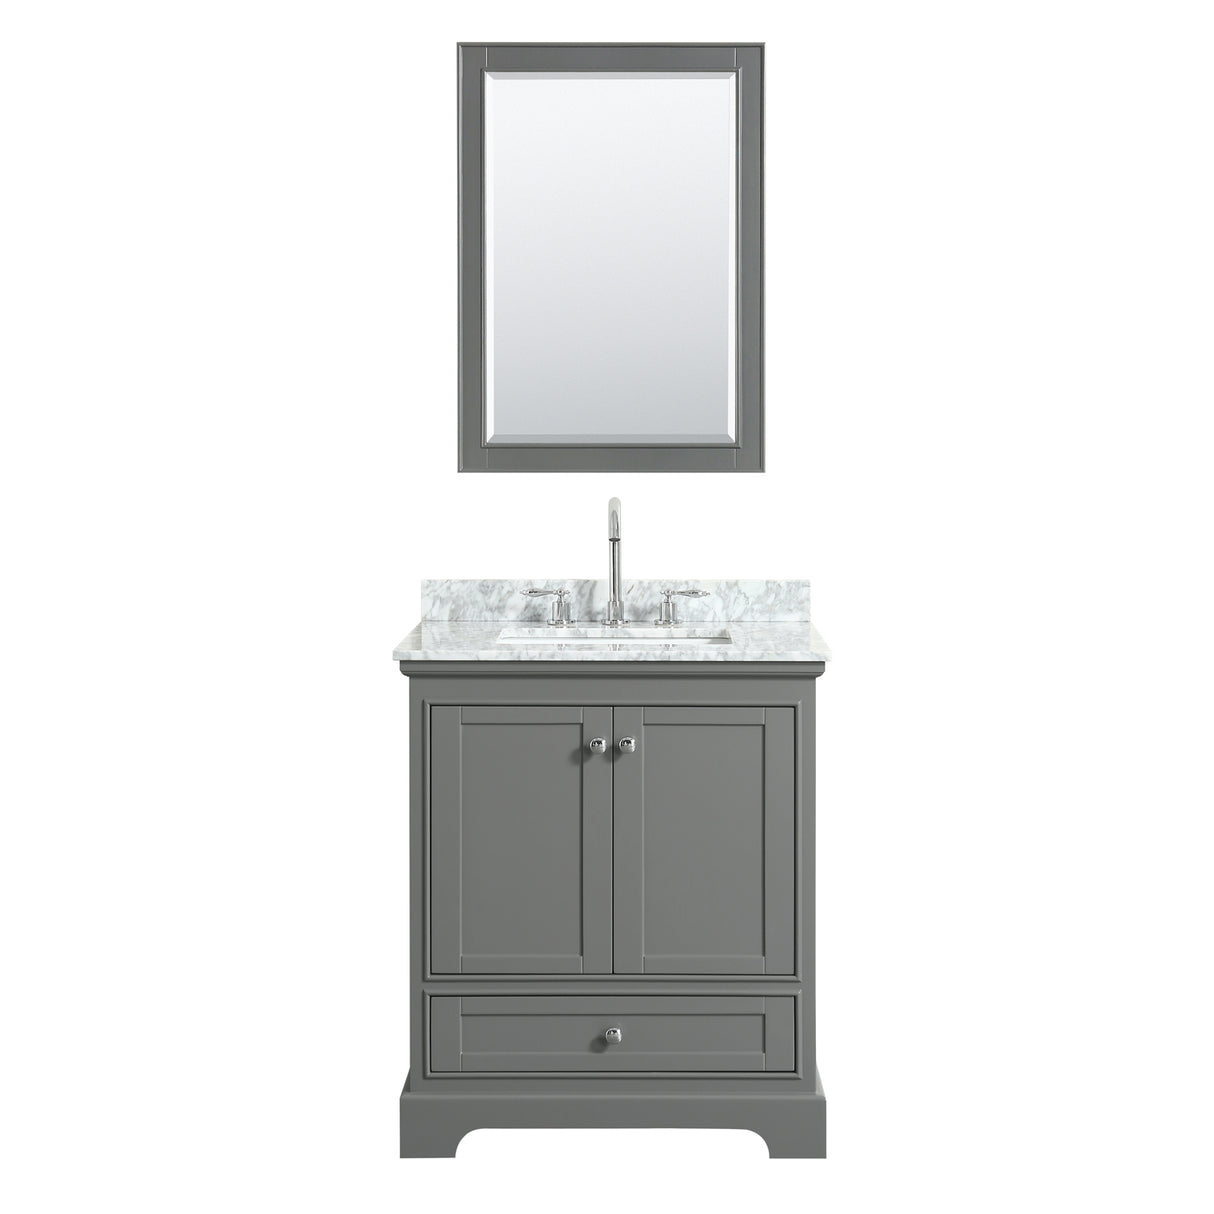 Deborah 30 Inch Single Bathroom Vanity in Dark Gray White Carrara Marble Countertop Undermount Square Sink and 24 Inch Mirror